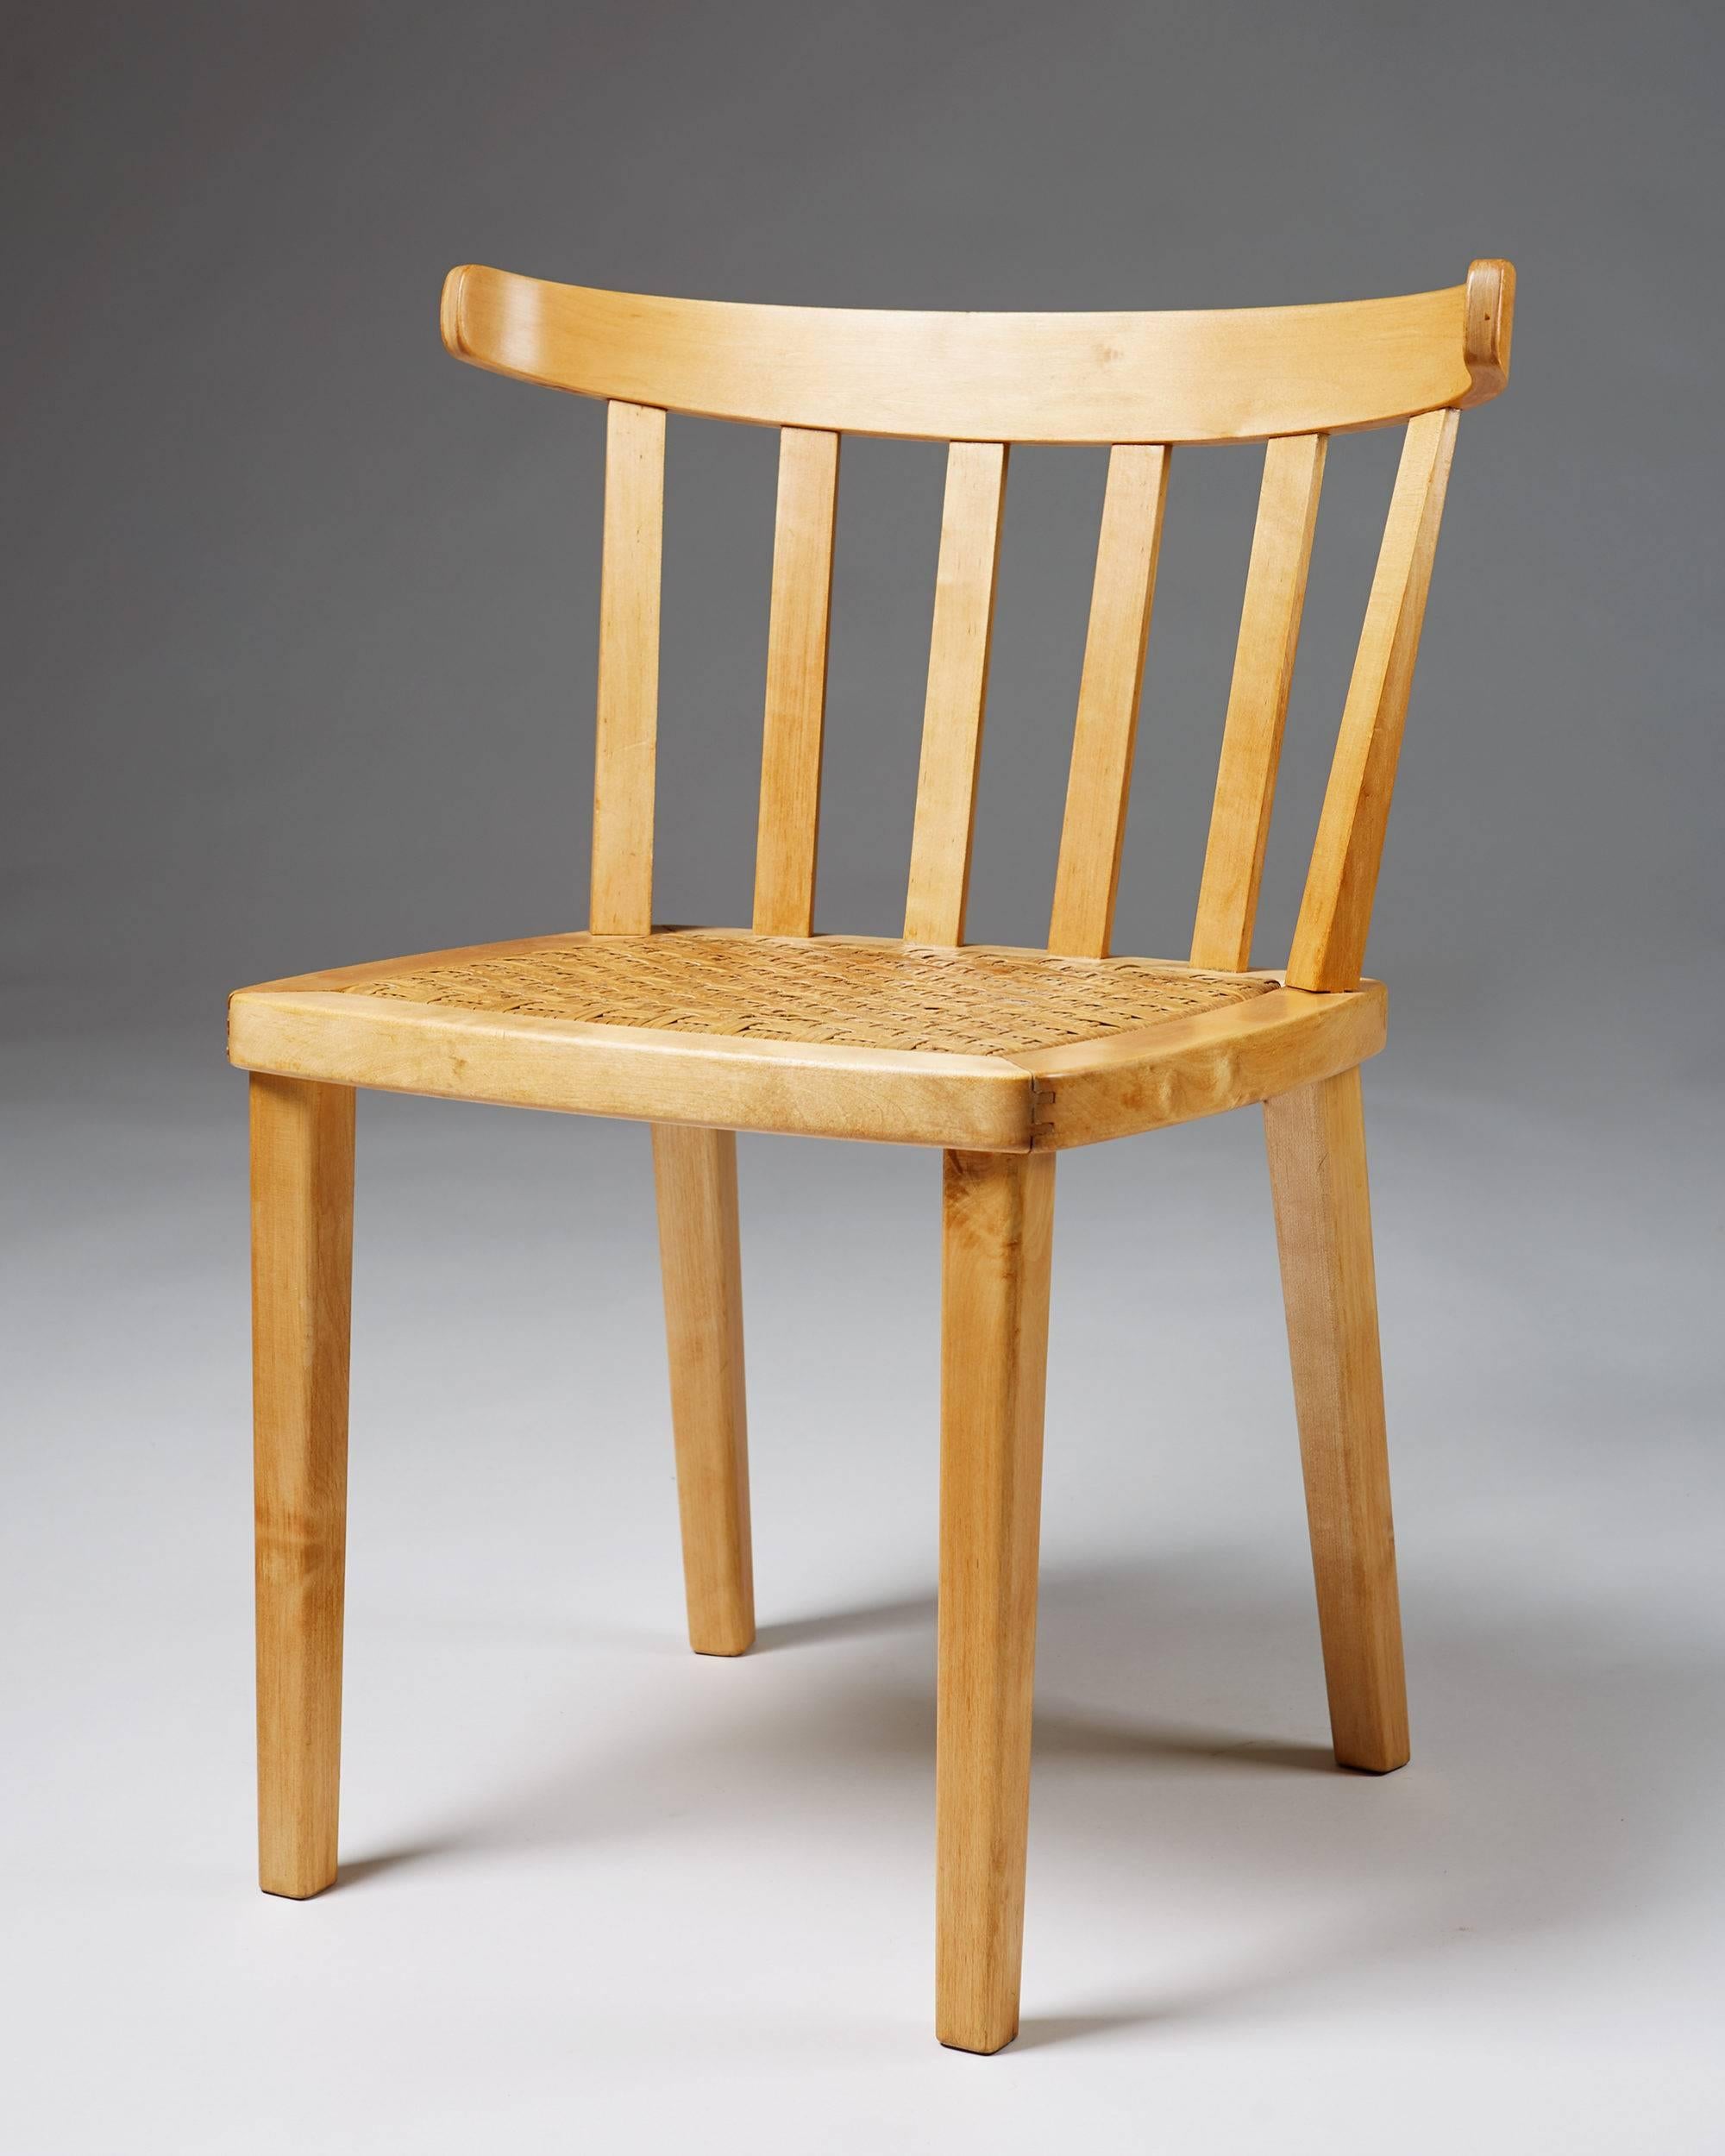 Ensemble de dix chaises de salle à manger conçu par Aino Aalto pour Artek, Finlande, années 1950.
Bouleau et canne.
Modèle très rare.

Mesures : H 74 cm/ 29